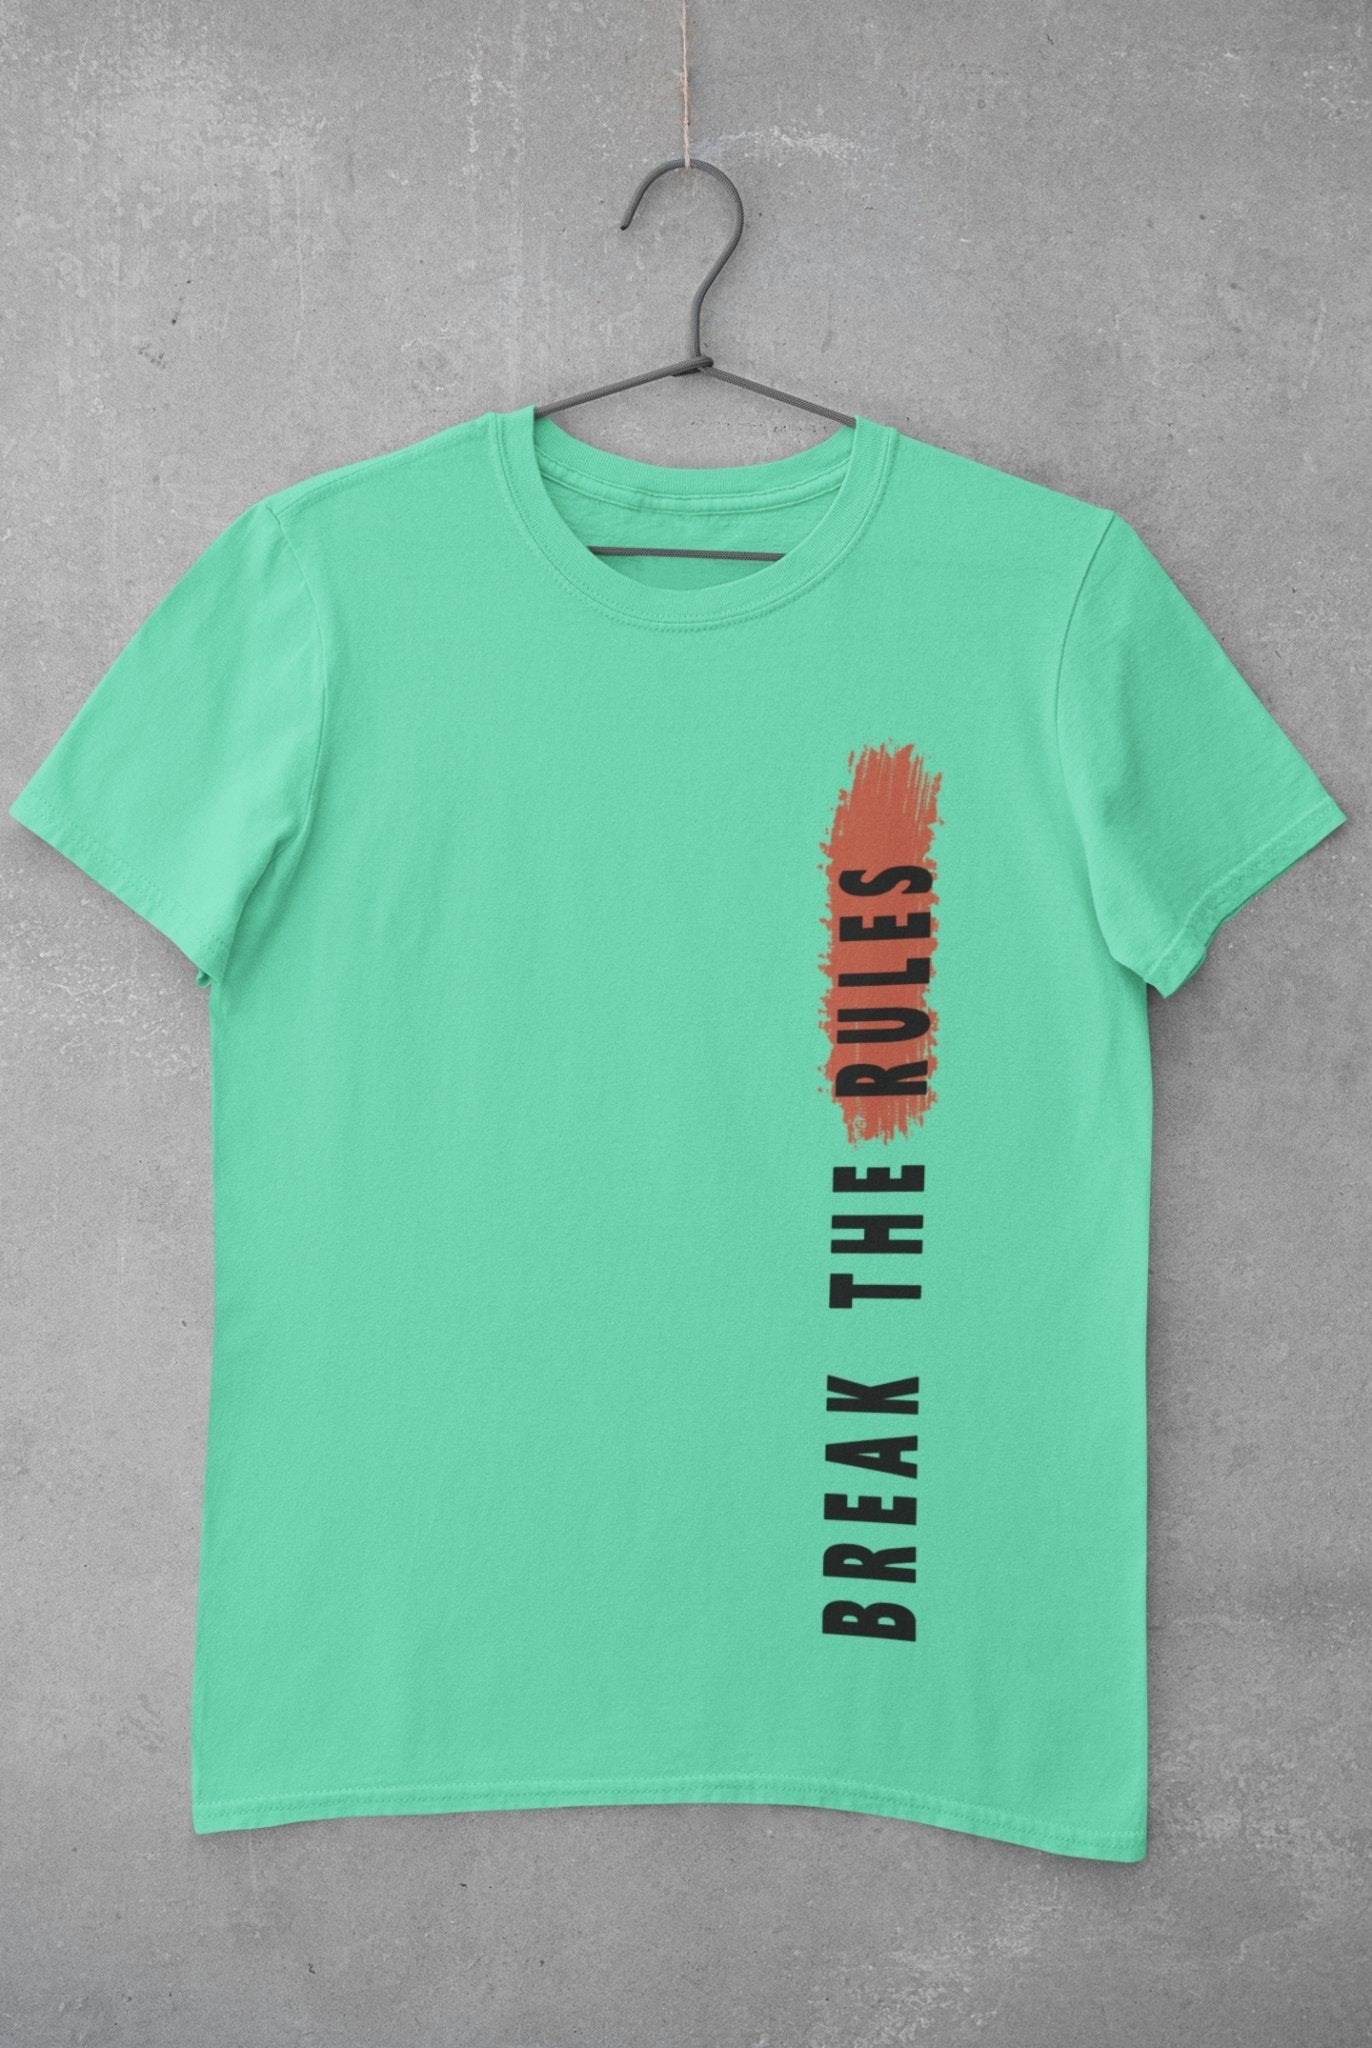 Break The Rules Women Half Sleeves T-shirt- FunkyTeesClub - Funky Tees Club